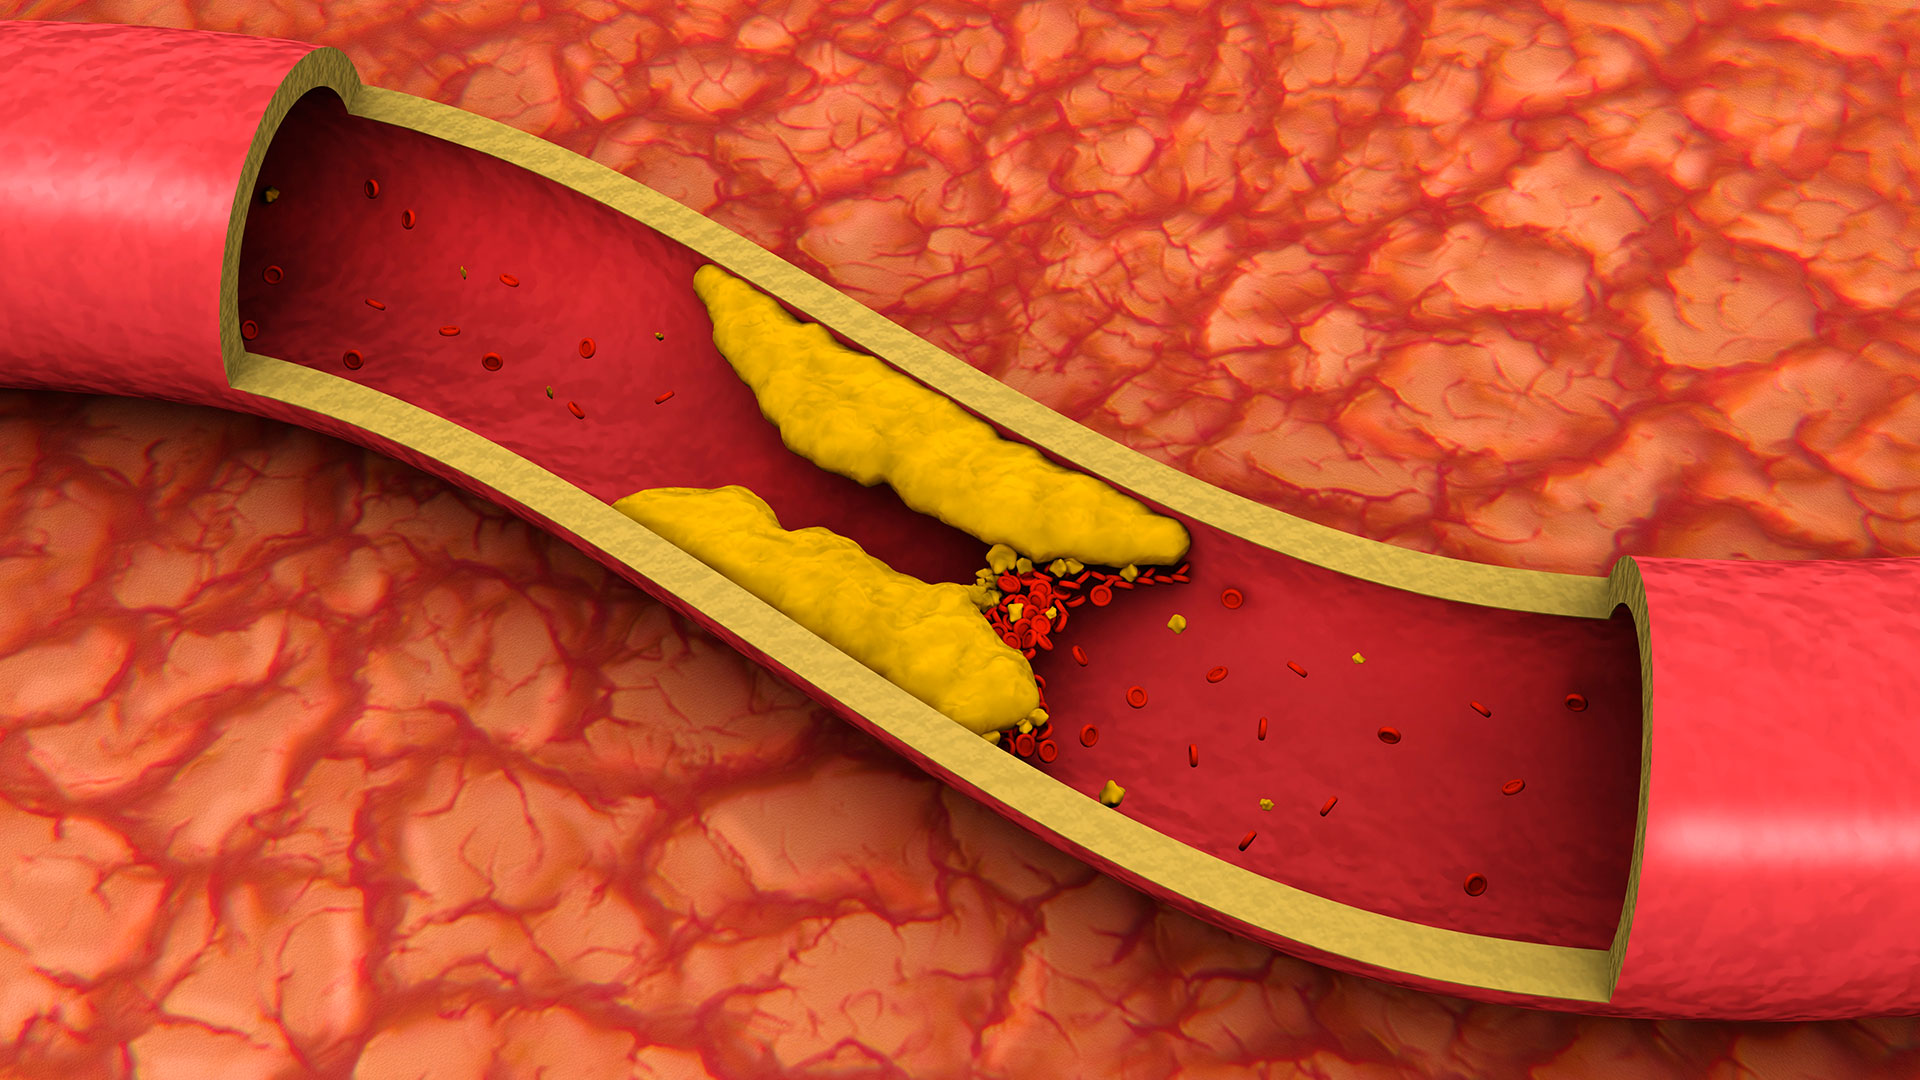 El colesterol alto en la sangre puede acumularse en las paredes de las arterias y formar depósitos conocidos como placas de ateroma. Con el tiempo, estas placas pueden endurecerse y estrechar las arterias, lo que puede obstaculizar el flujo de sangre y aumentar el riesgo de enfermedades cardíacas y derrames cerebrales.(Gettyimages)